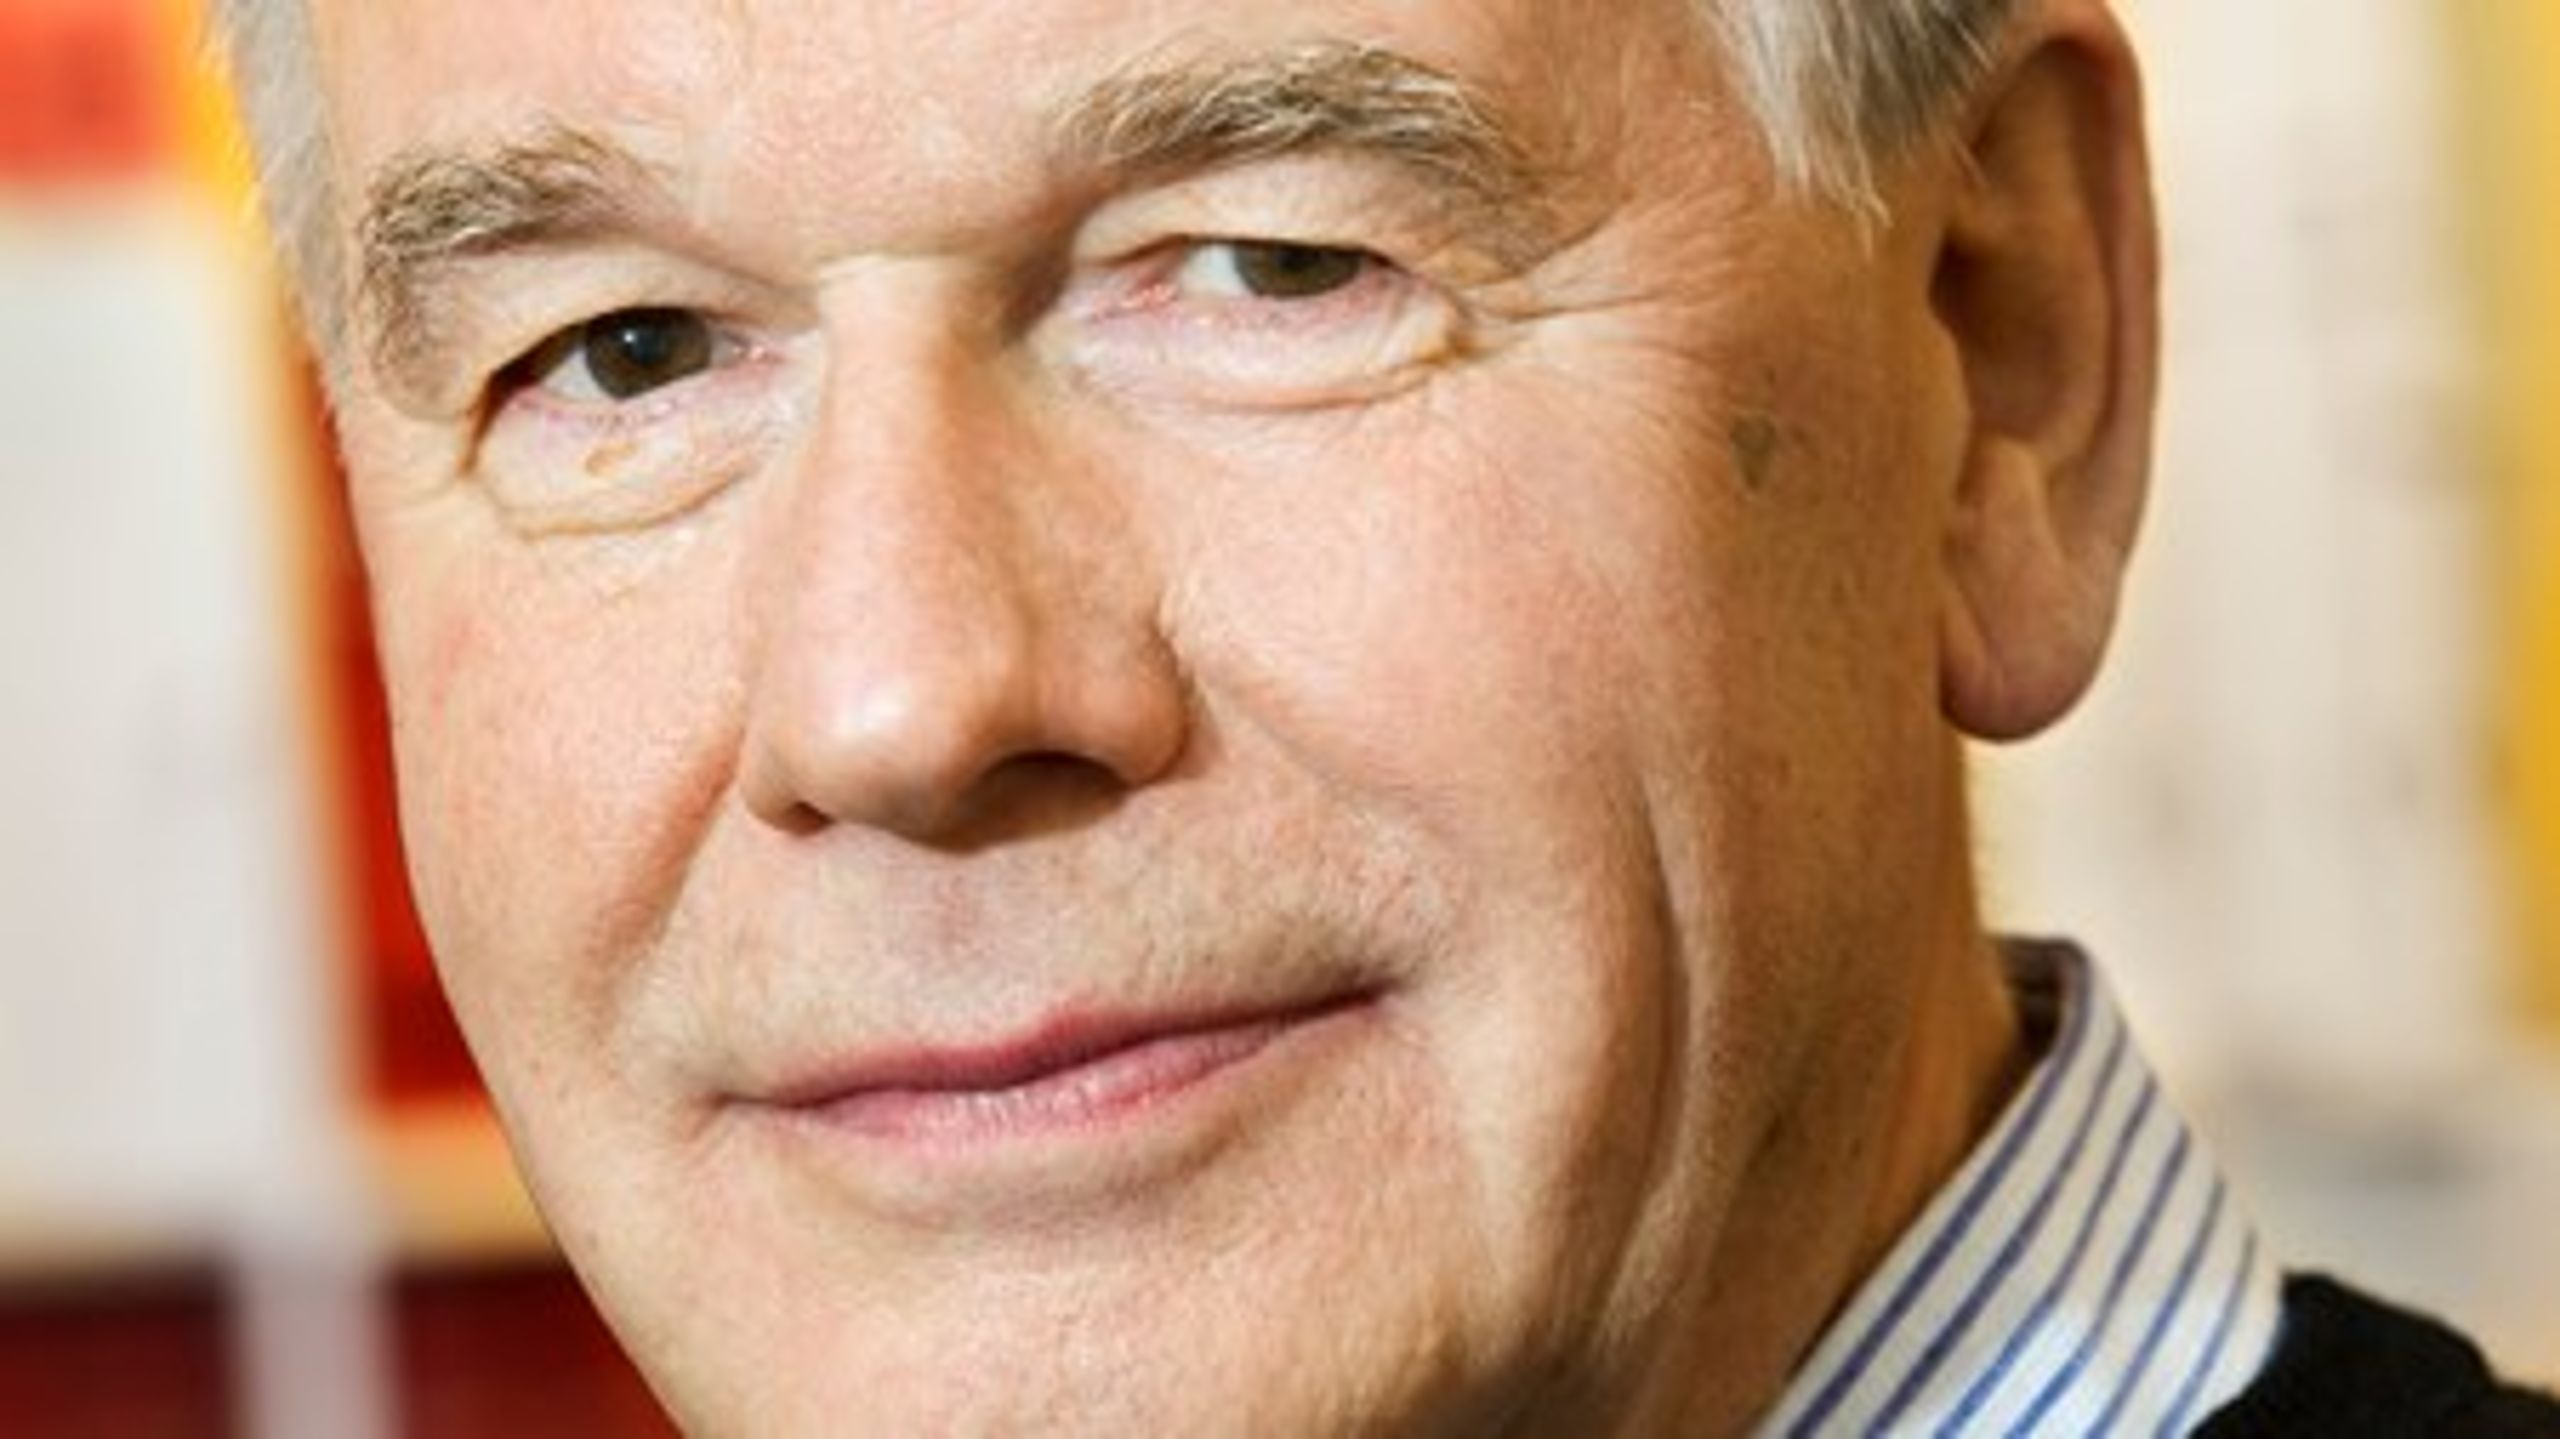 Kjell Asplund är ordförande i Statens medicinsk-etiska råd, SMER, sedan 2012. Han har tidigare bland annat varit generaldirektör för Socialstyrelsen, precis som en av de politiska ledamöterna i rådet: Barbro Westerholm (FP).